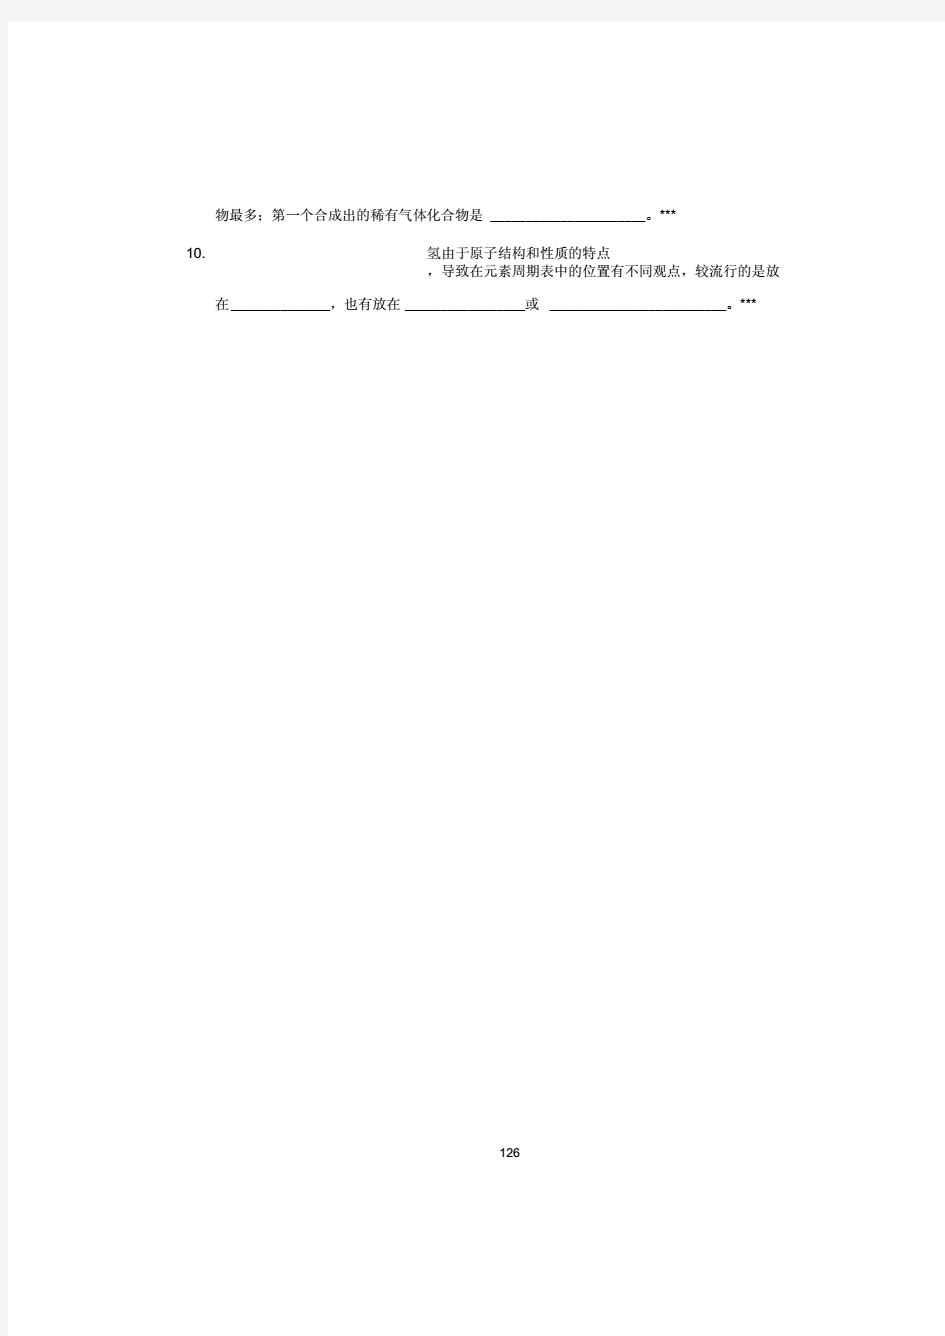 无机化学万题库(填空题)(10-15).pdf